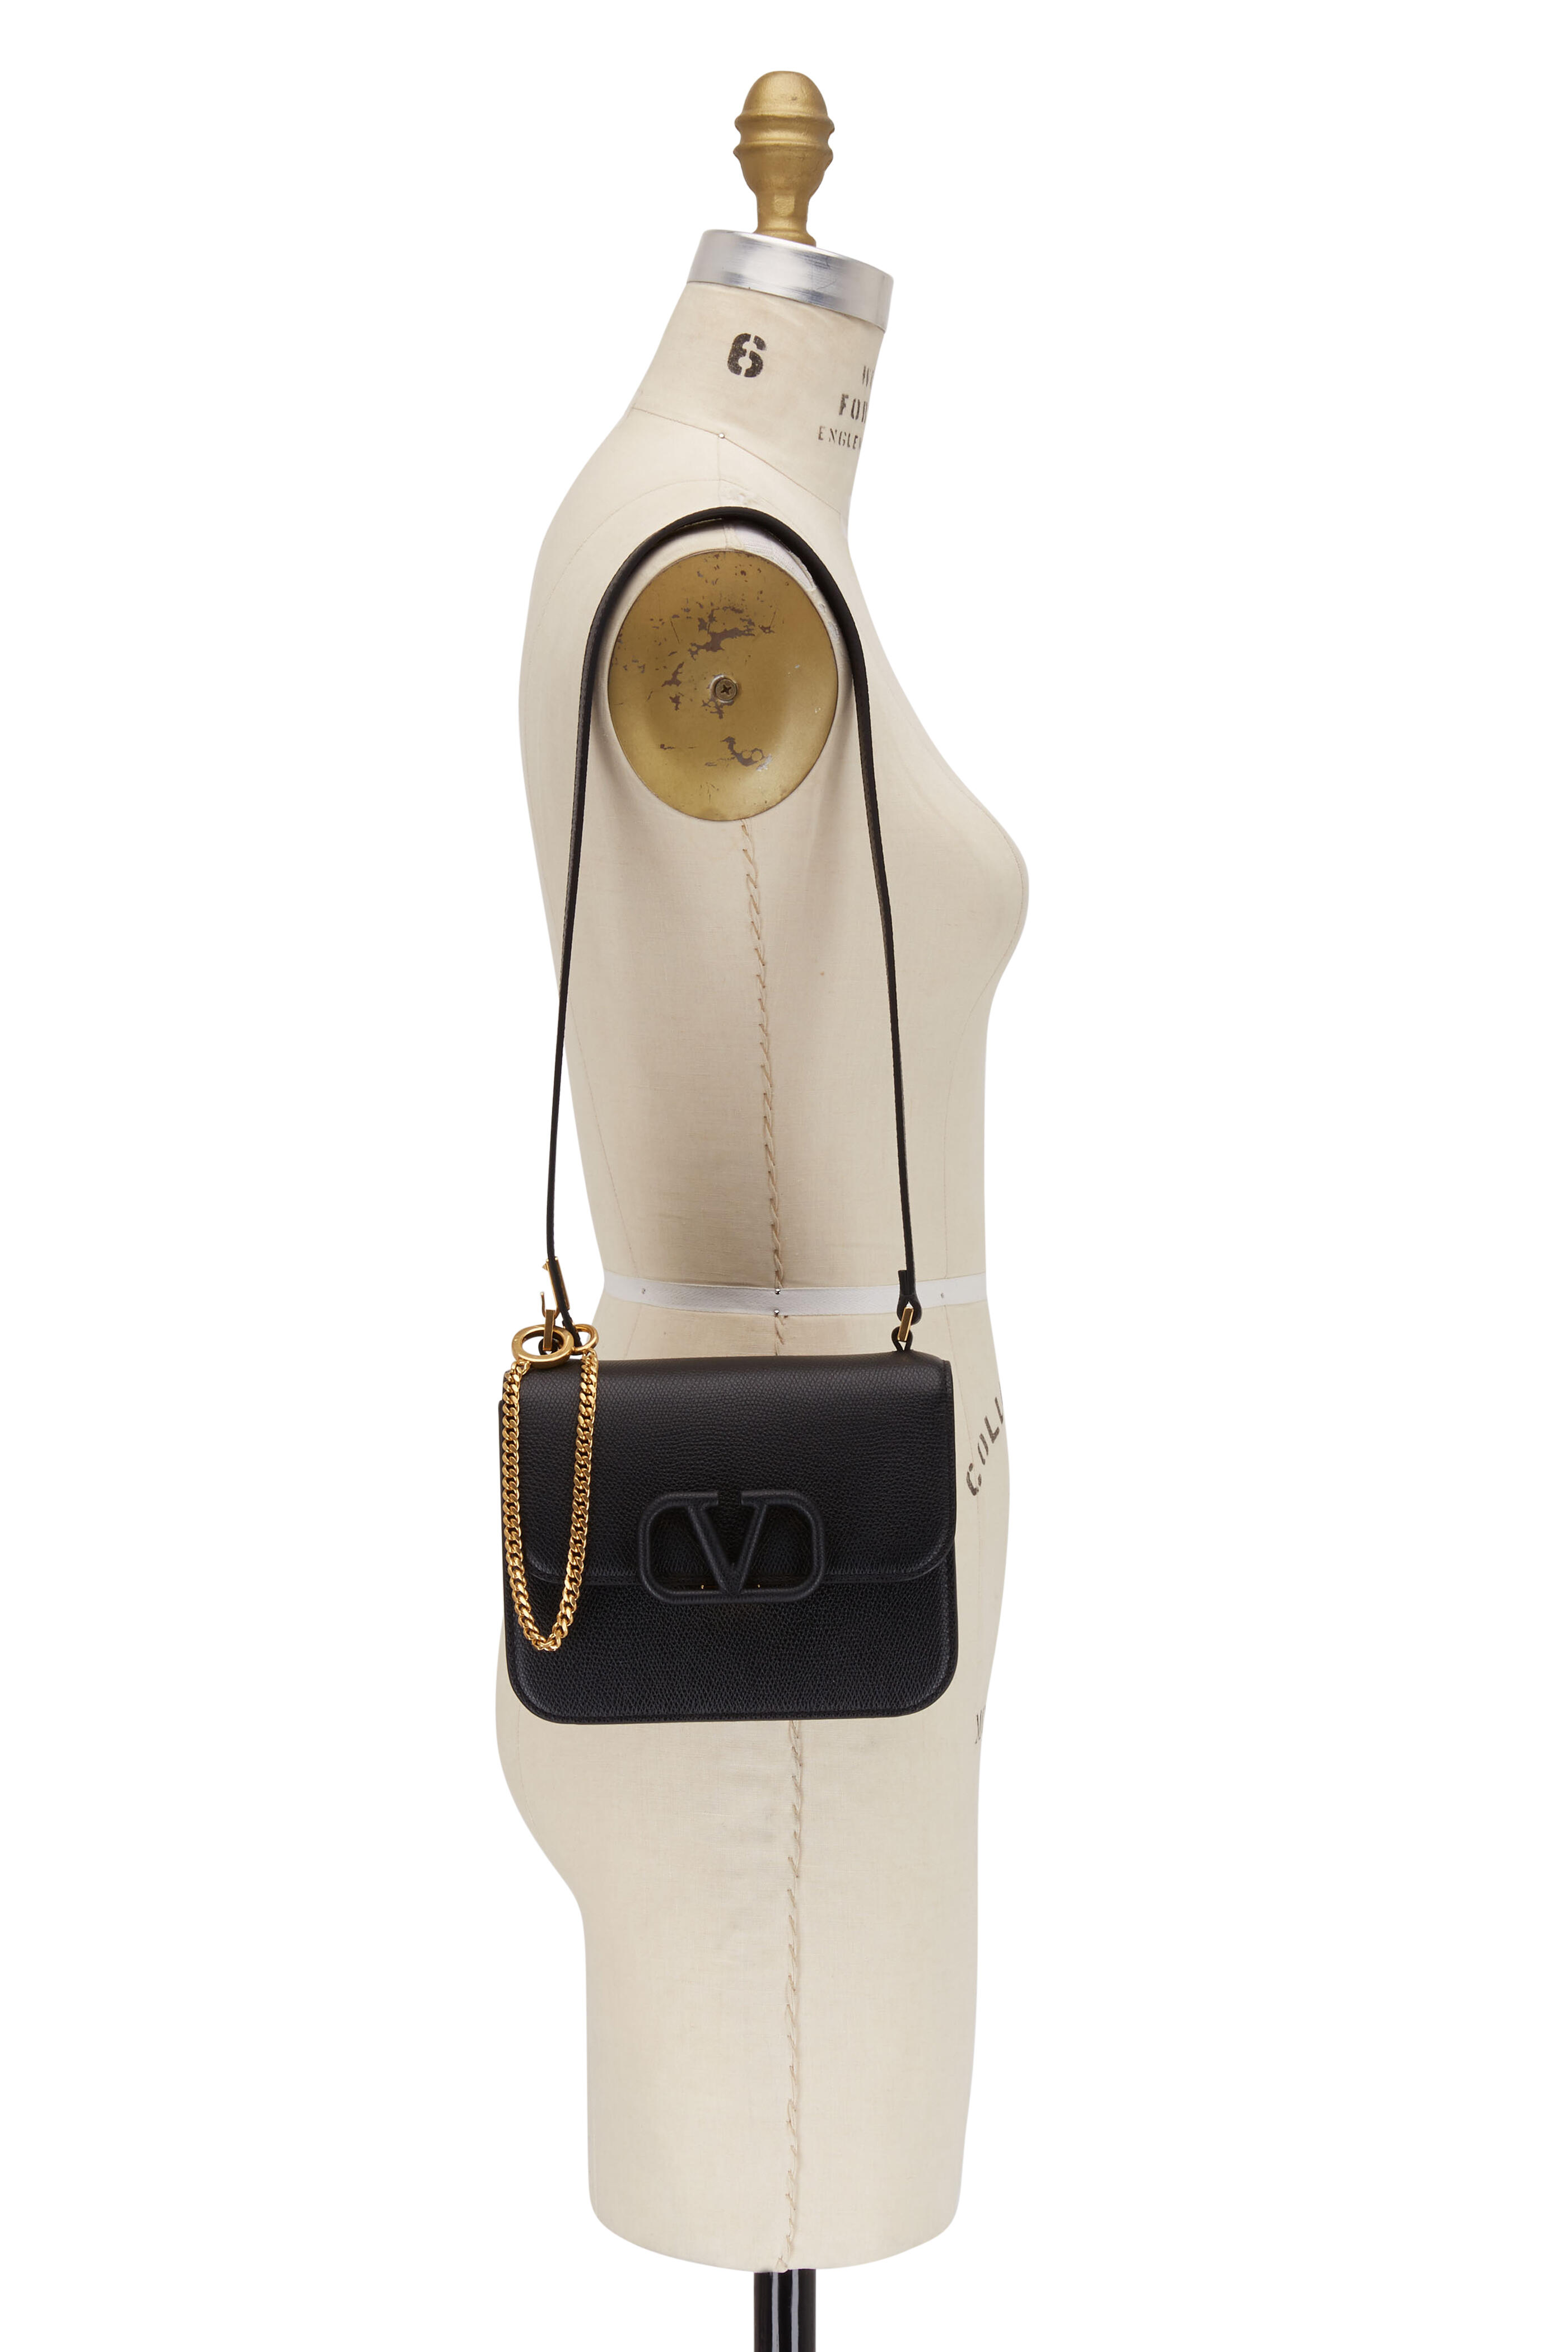 Valentino Garavani - V-Sling Black Grained Leather Small Shoulder Bag